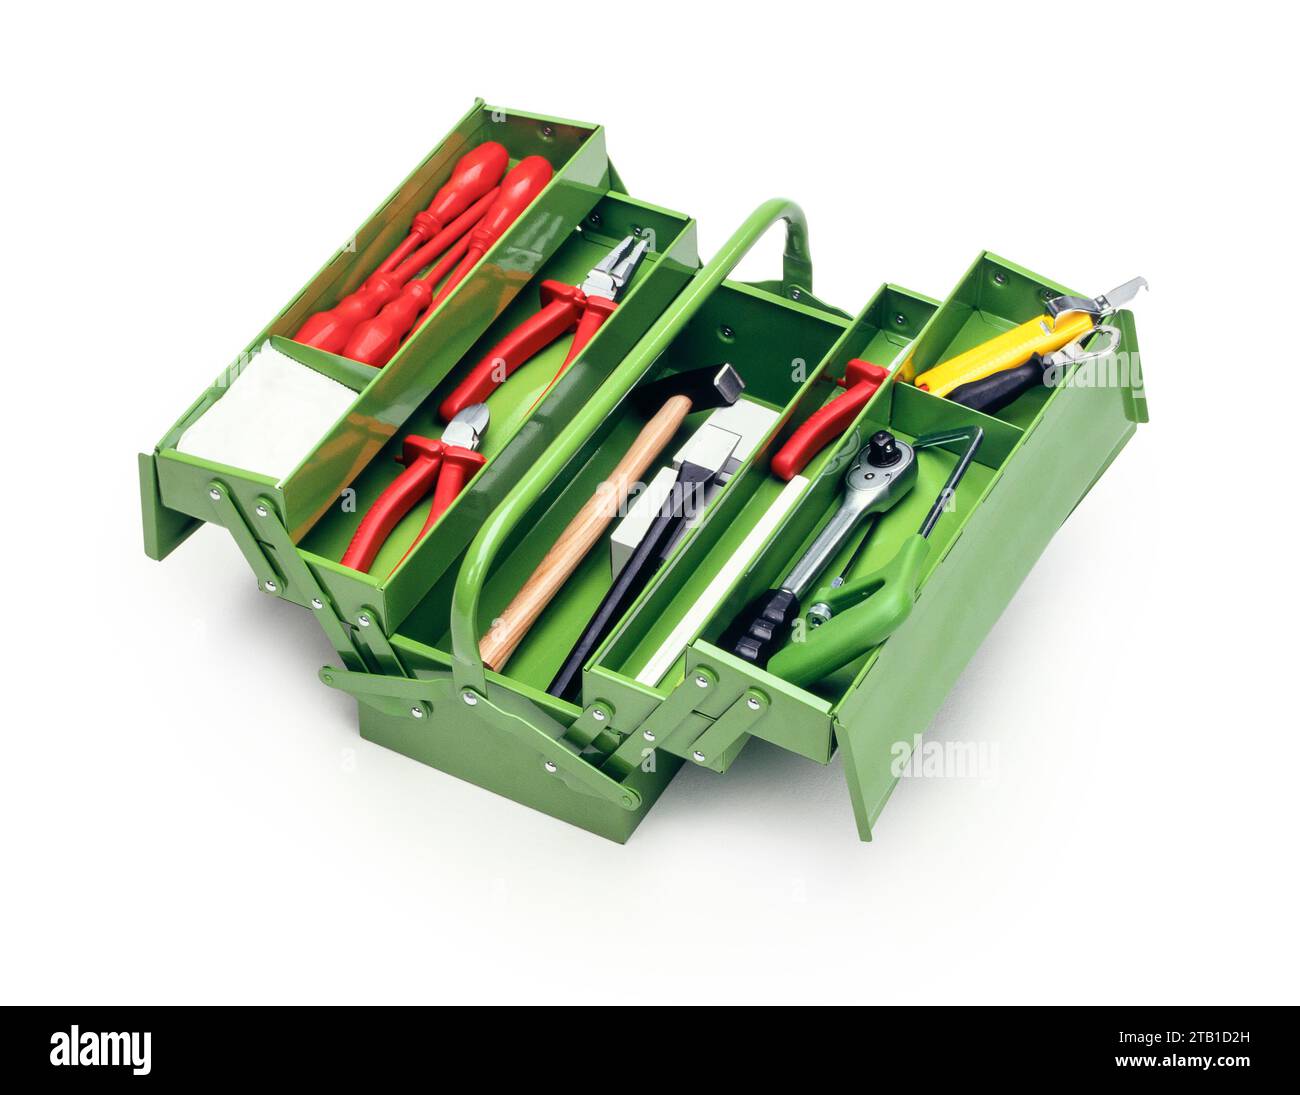 Prise de vue en grand angle d'une boîte à outils verte remplie d'outils Banque D'Images